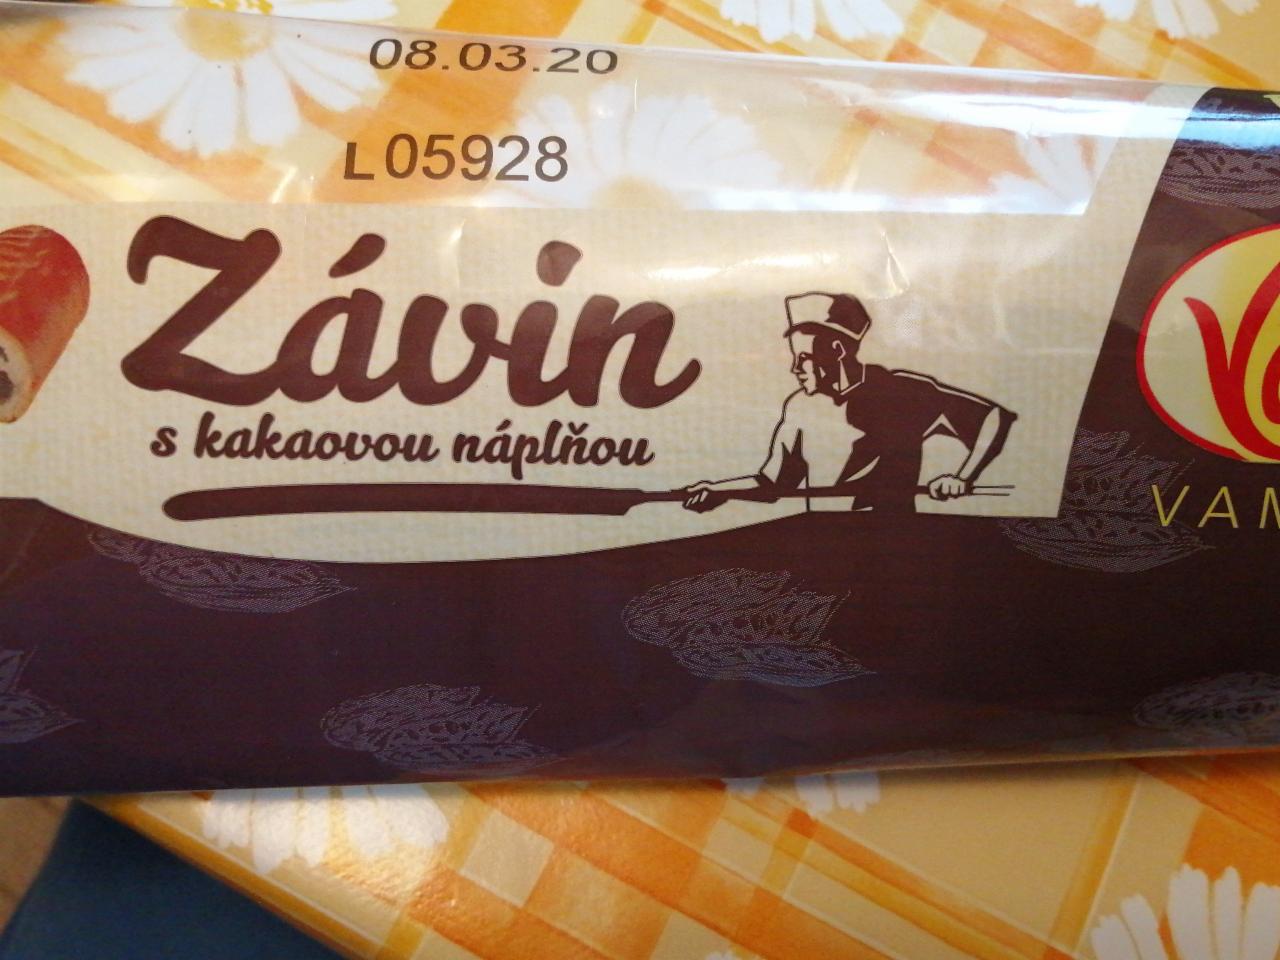 Fotografie - Závin s kakaovou náplňou Vamex